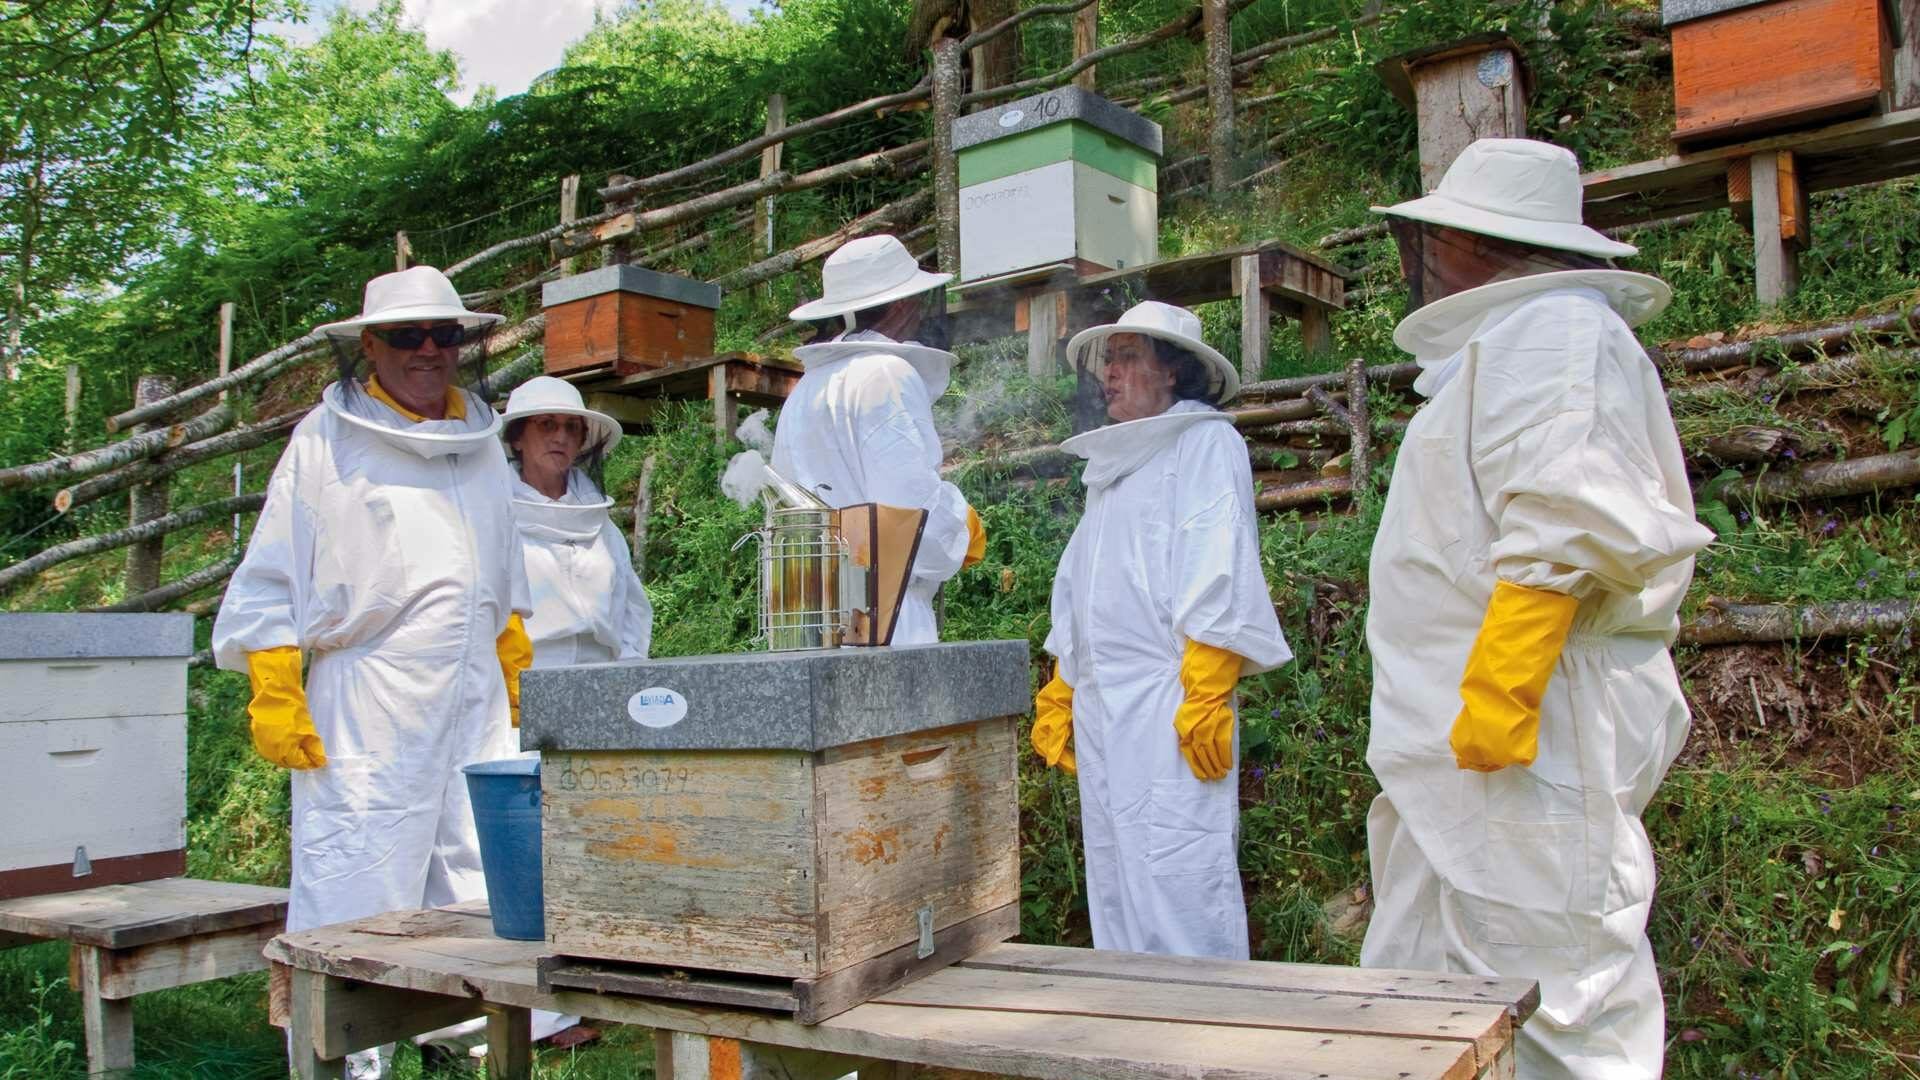 Conocer el universo de las abejas es toda una experiencia, puedes ser apicultor por un día. Foto © Juanjo Arrojo.